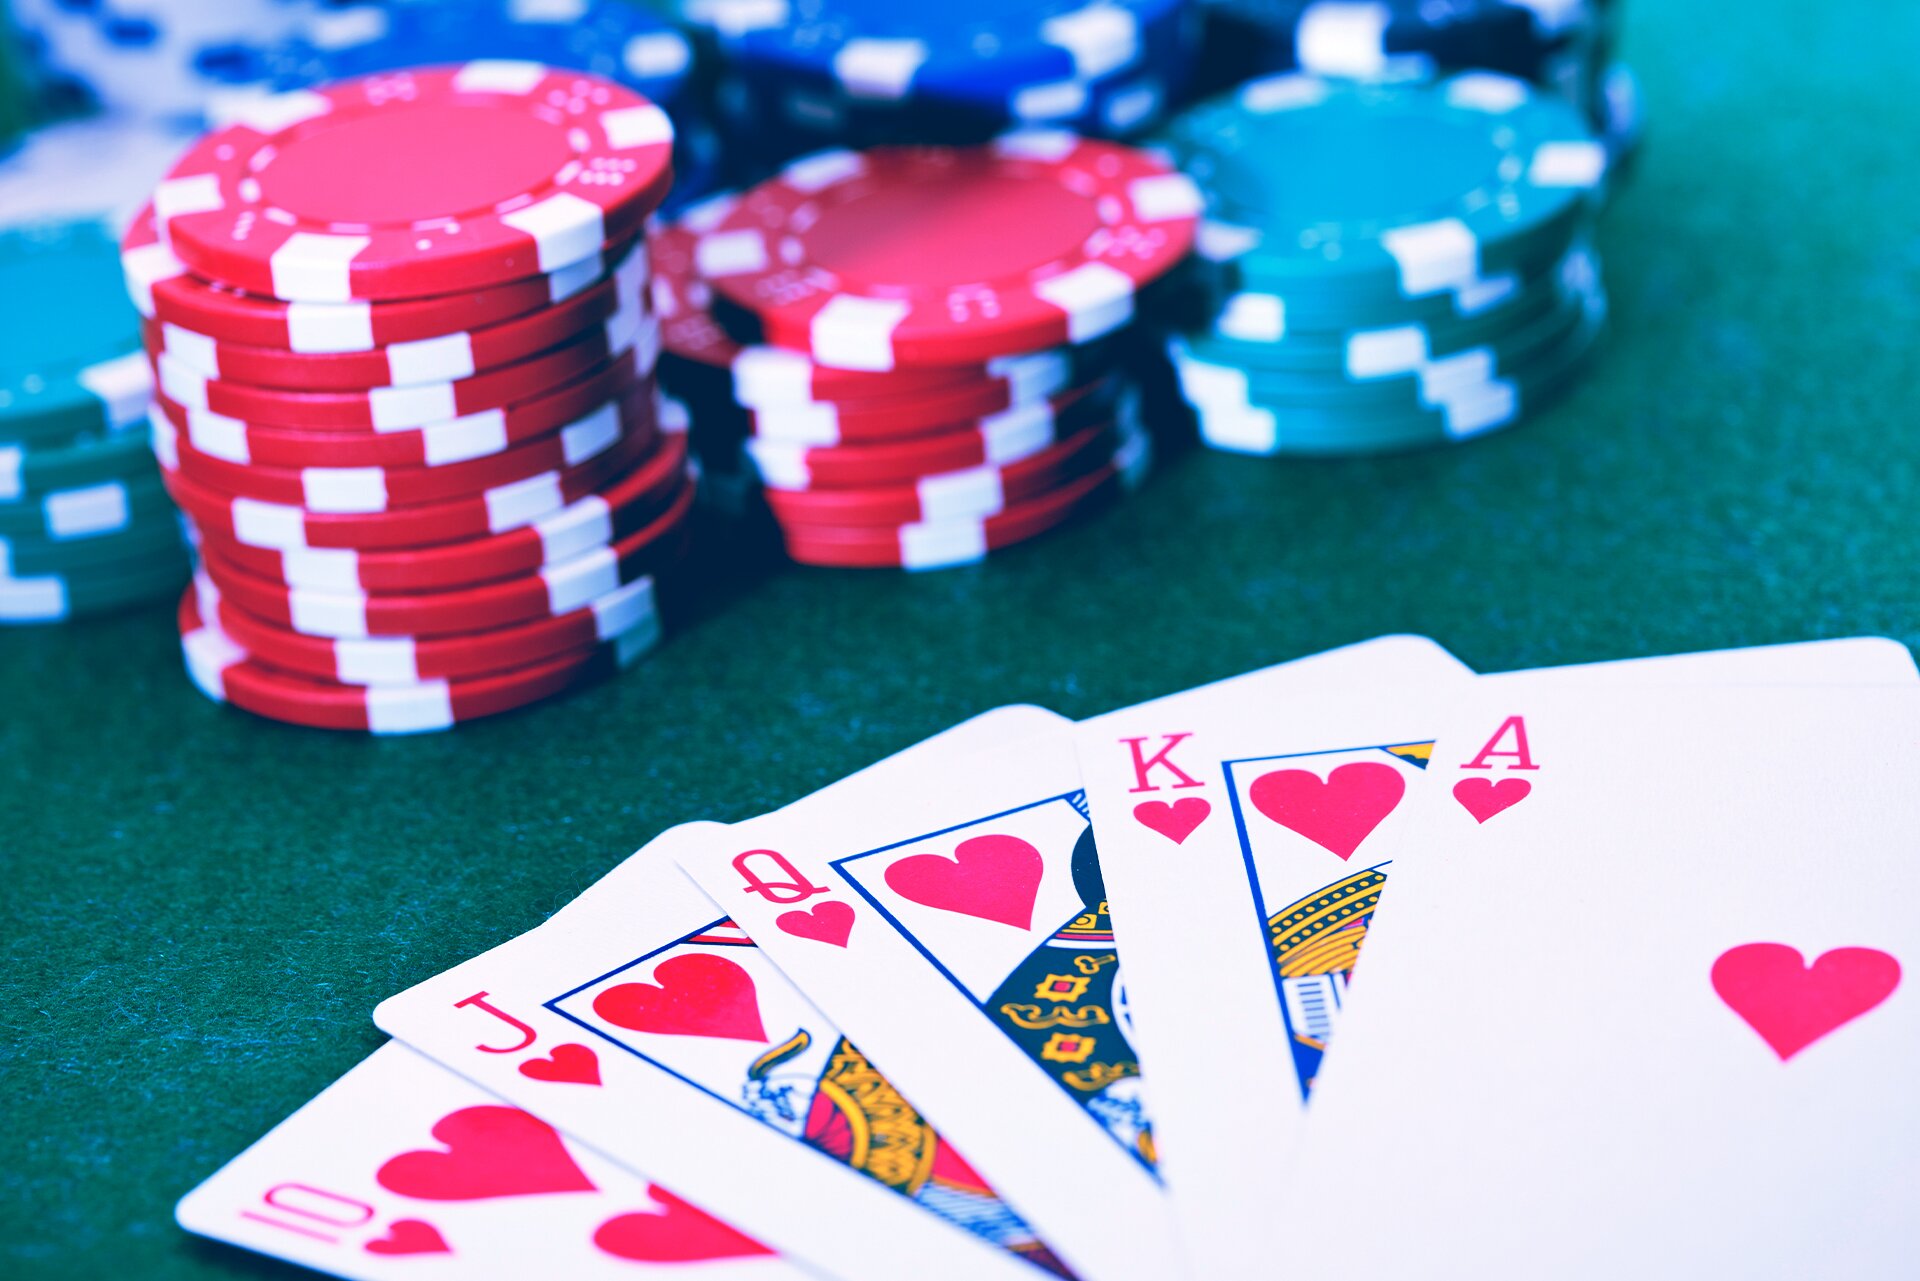 Arena India Ruilhandel Online poker websites vinden in België voor echt geld